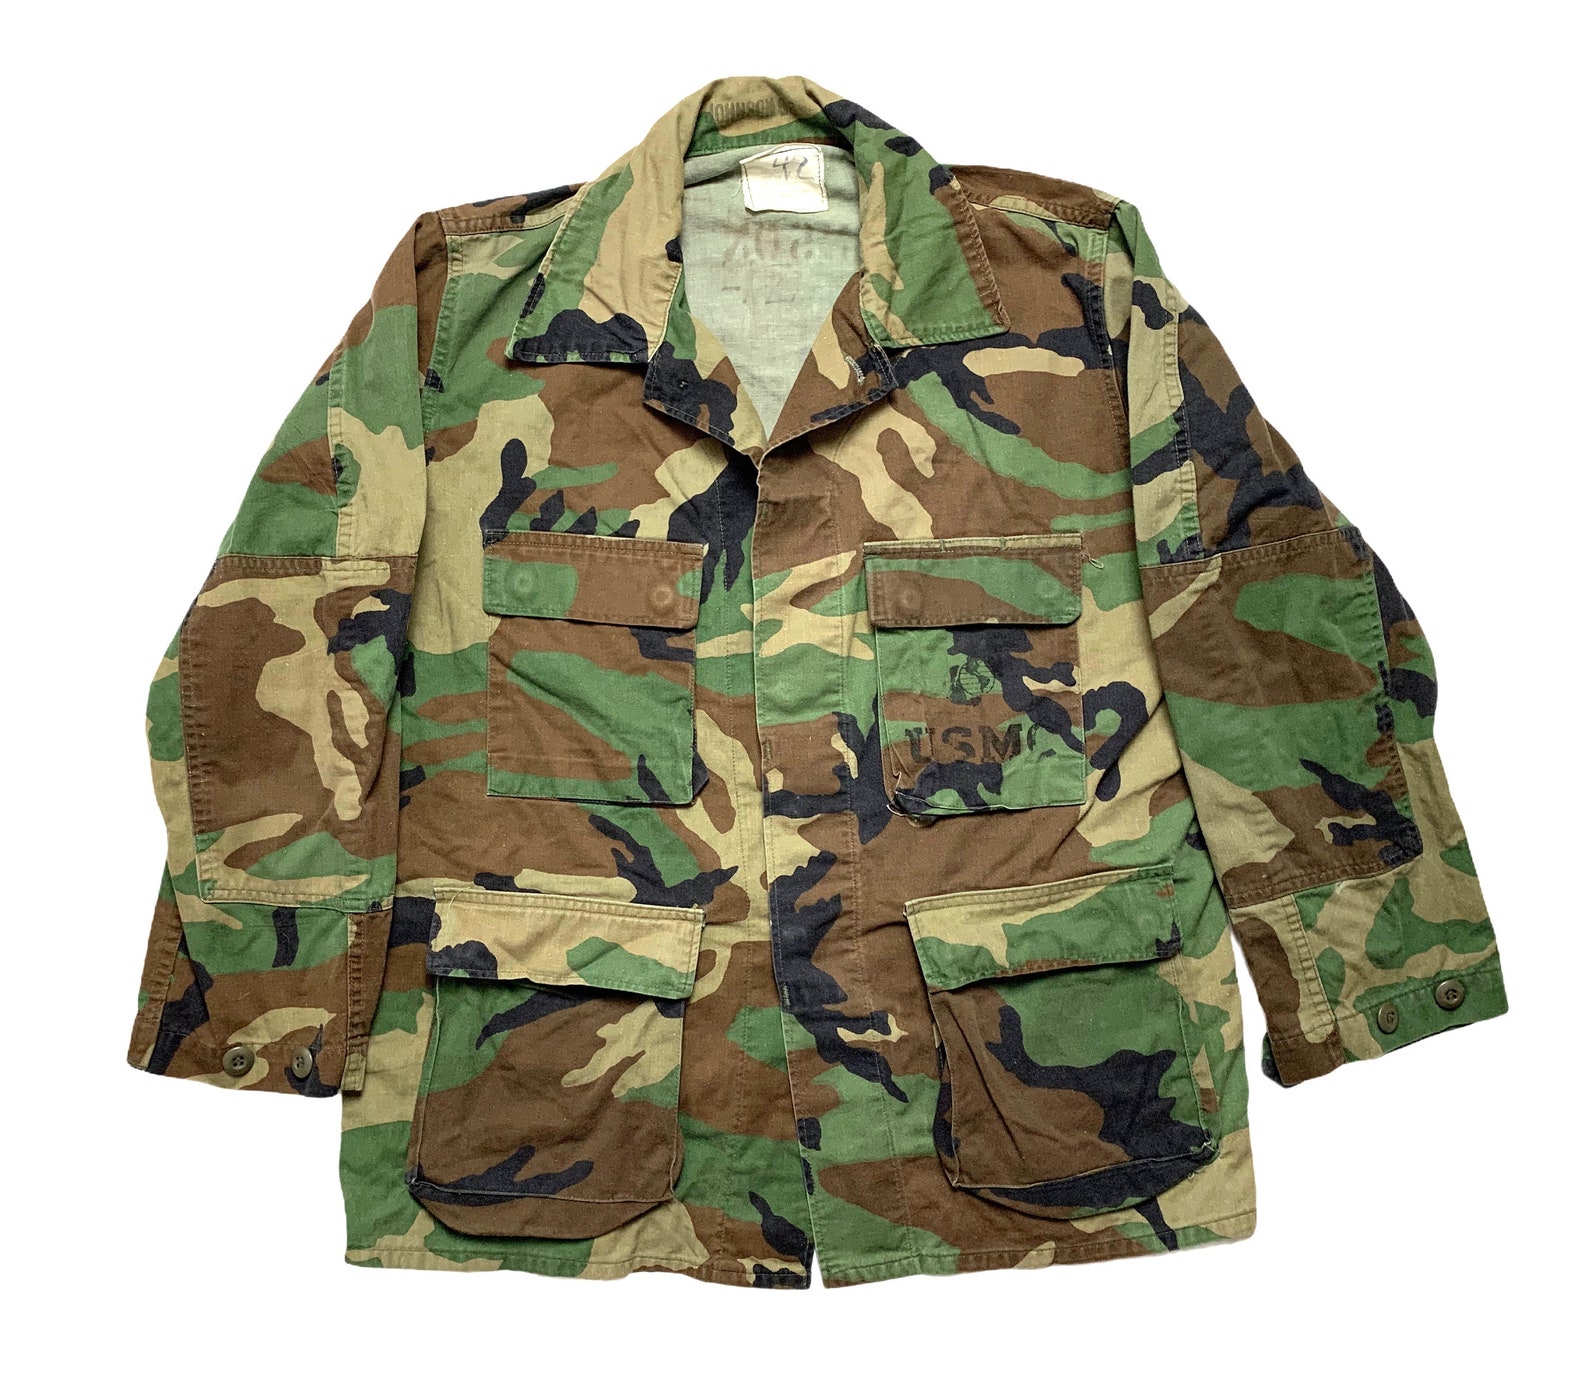 Vintage US Marine Corps Camouflage Jacket size Medium Short | Etsy